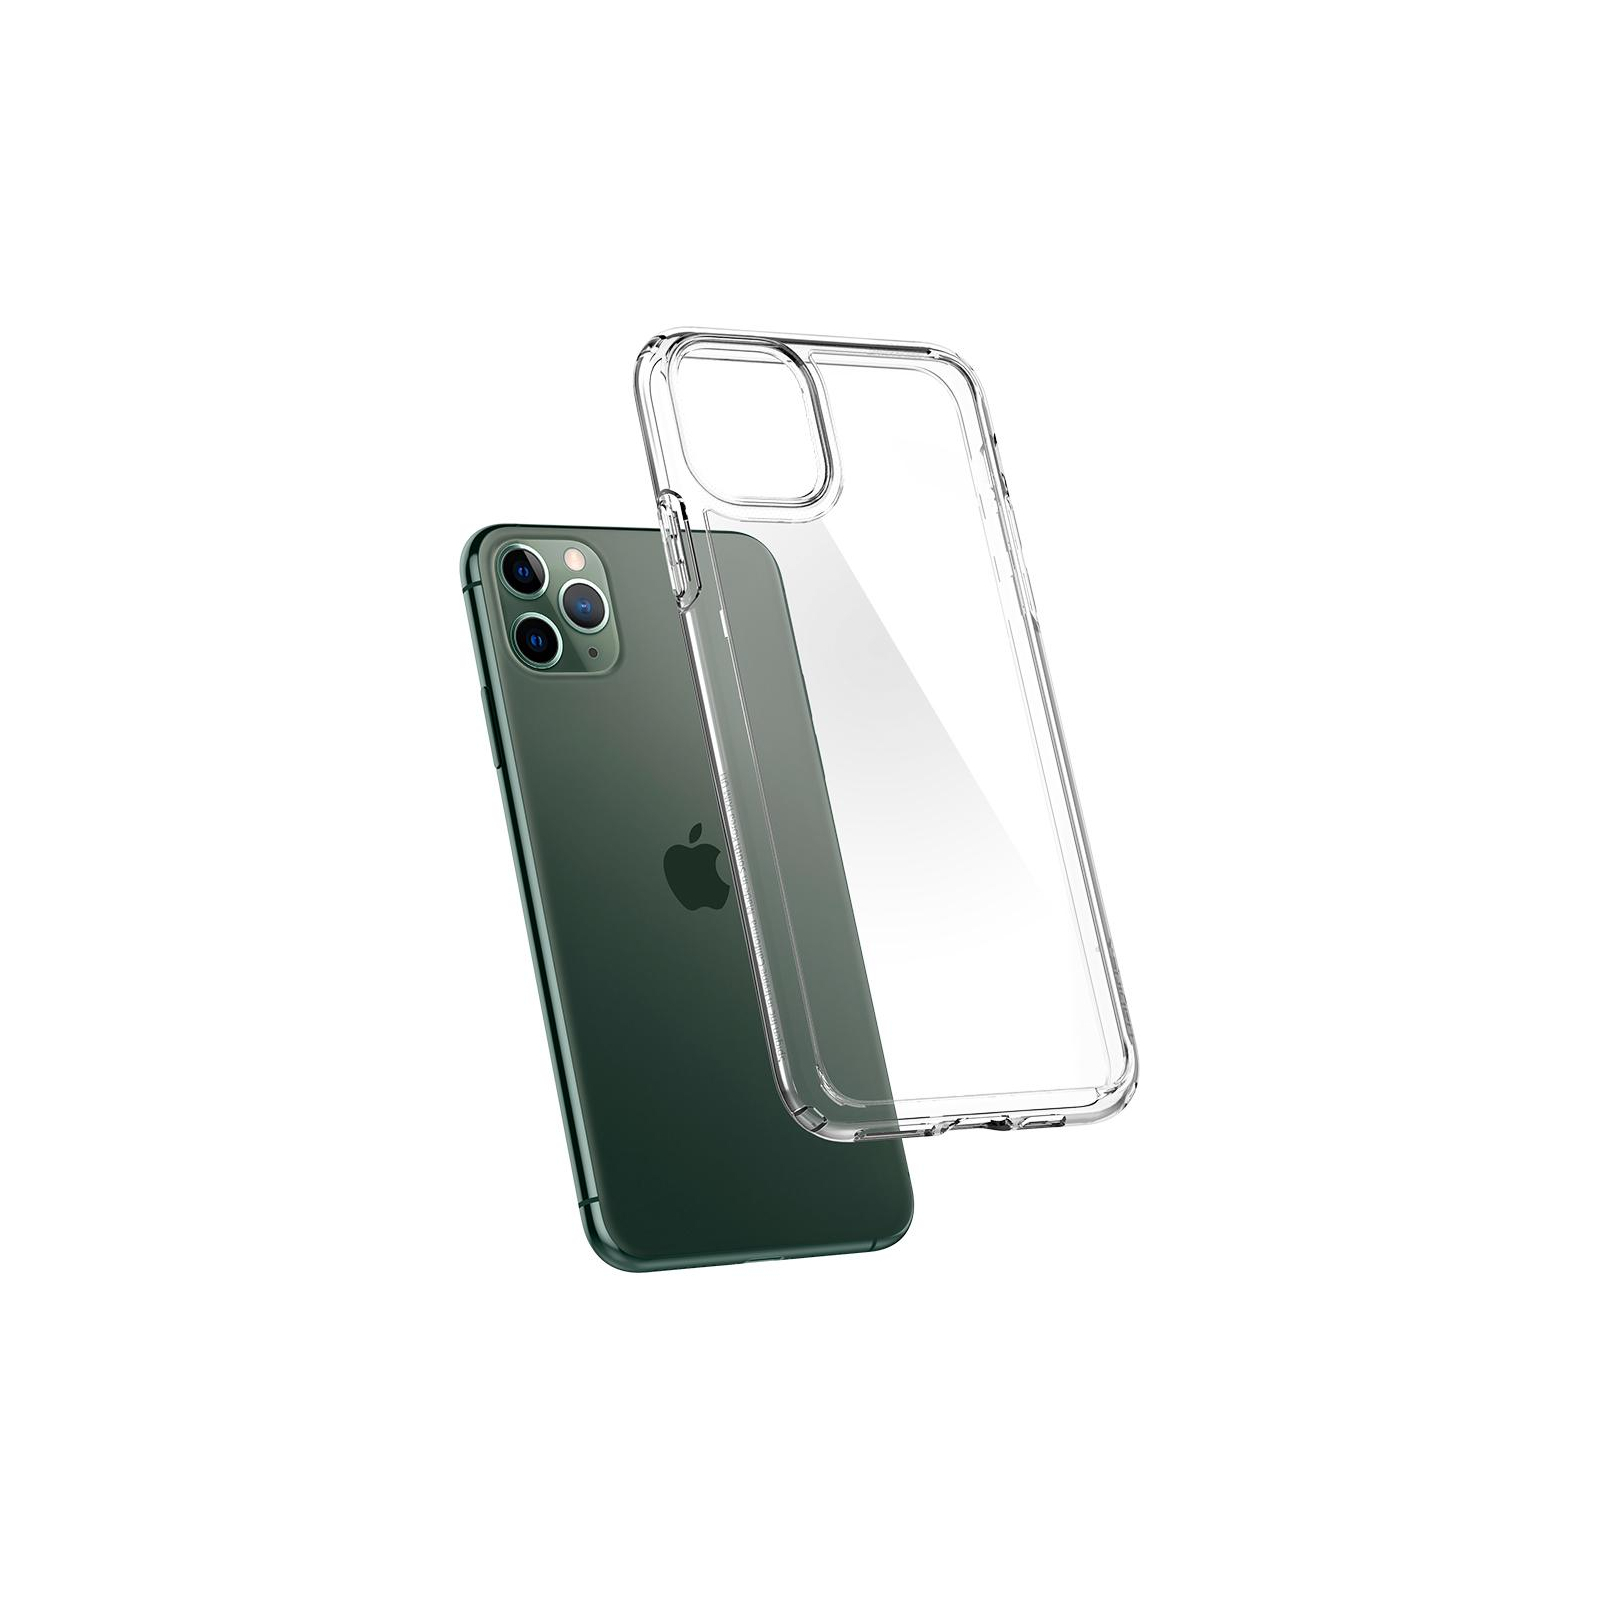 Чехол для мобильного телефона Spigen iPhone 11 Pro Max Ultra Hybrid, Crystal Clear (075CS27135) изображение 6